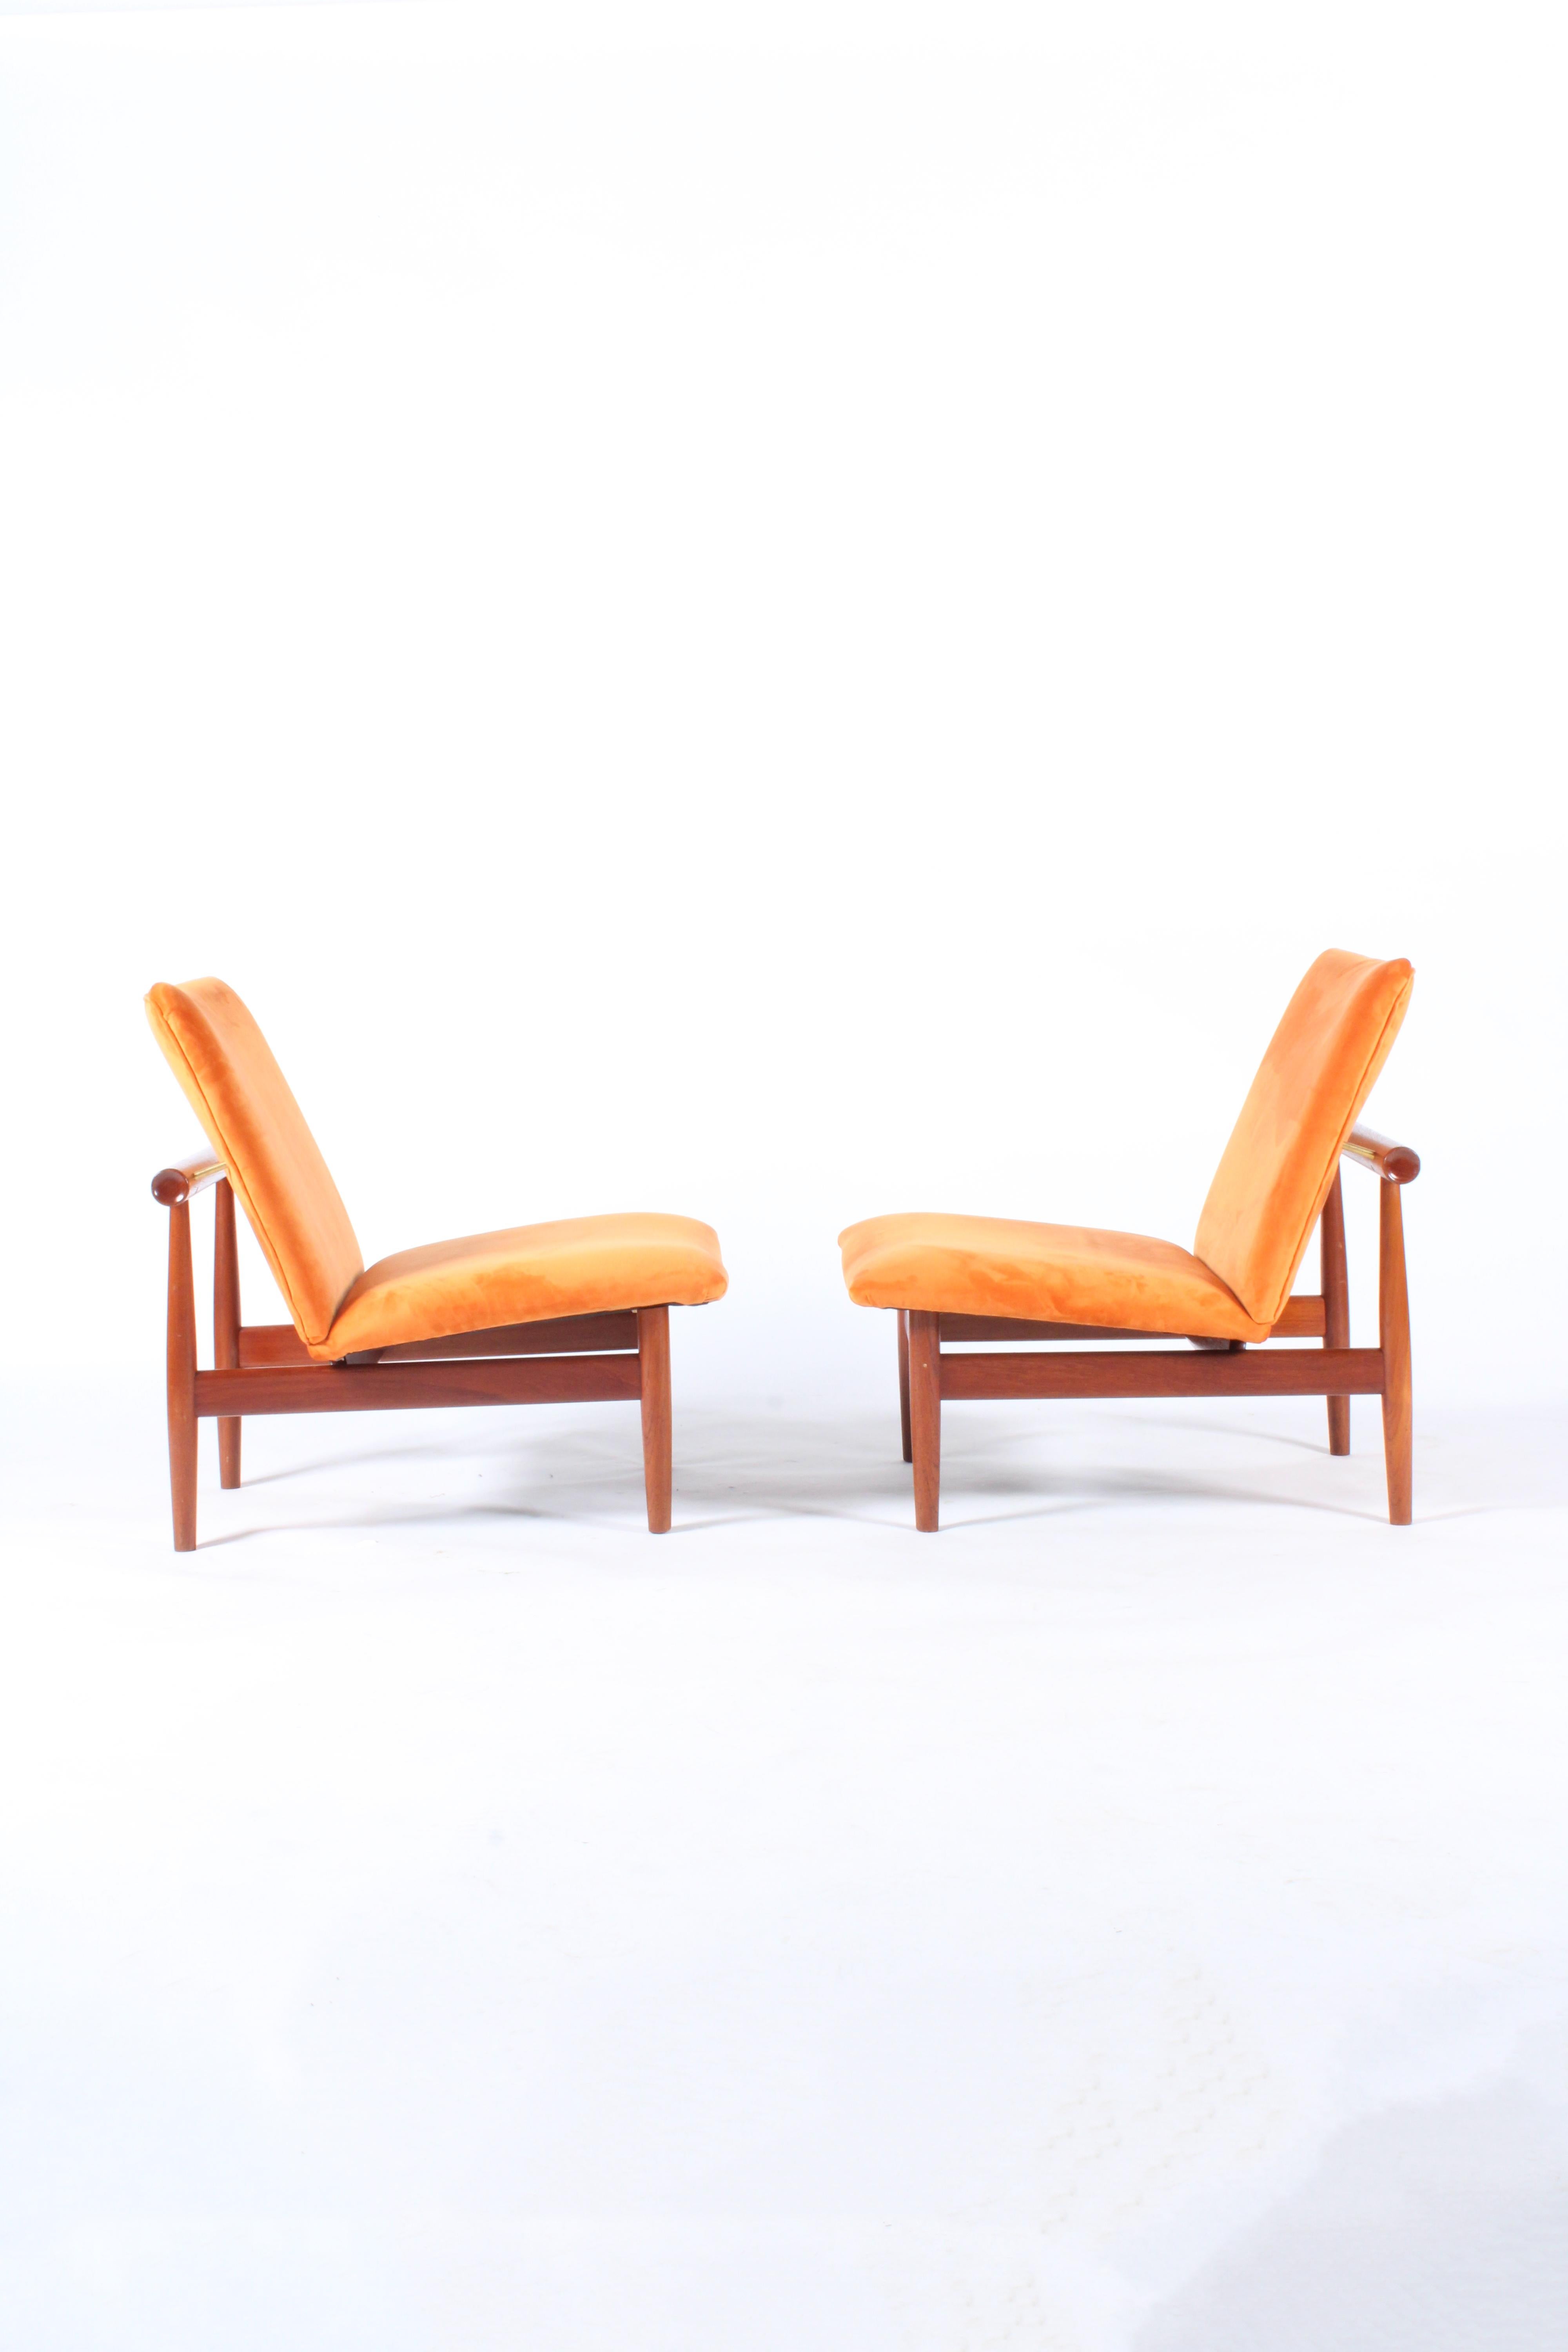 Pair of Iconic Danish Design Japan Chairs by Finn Juhl for France & Daverkosen 5